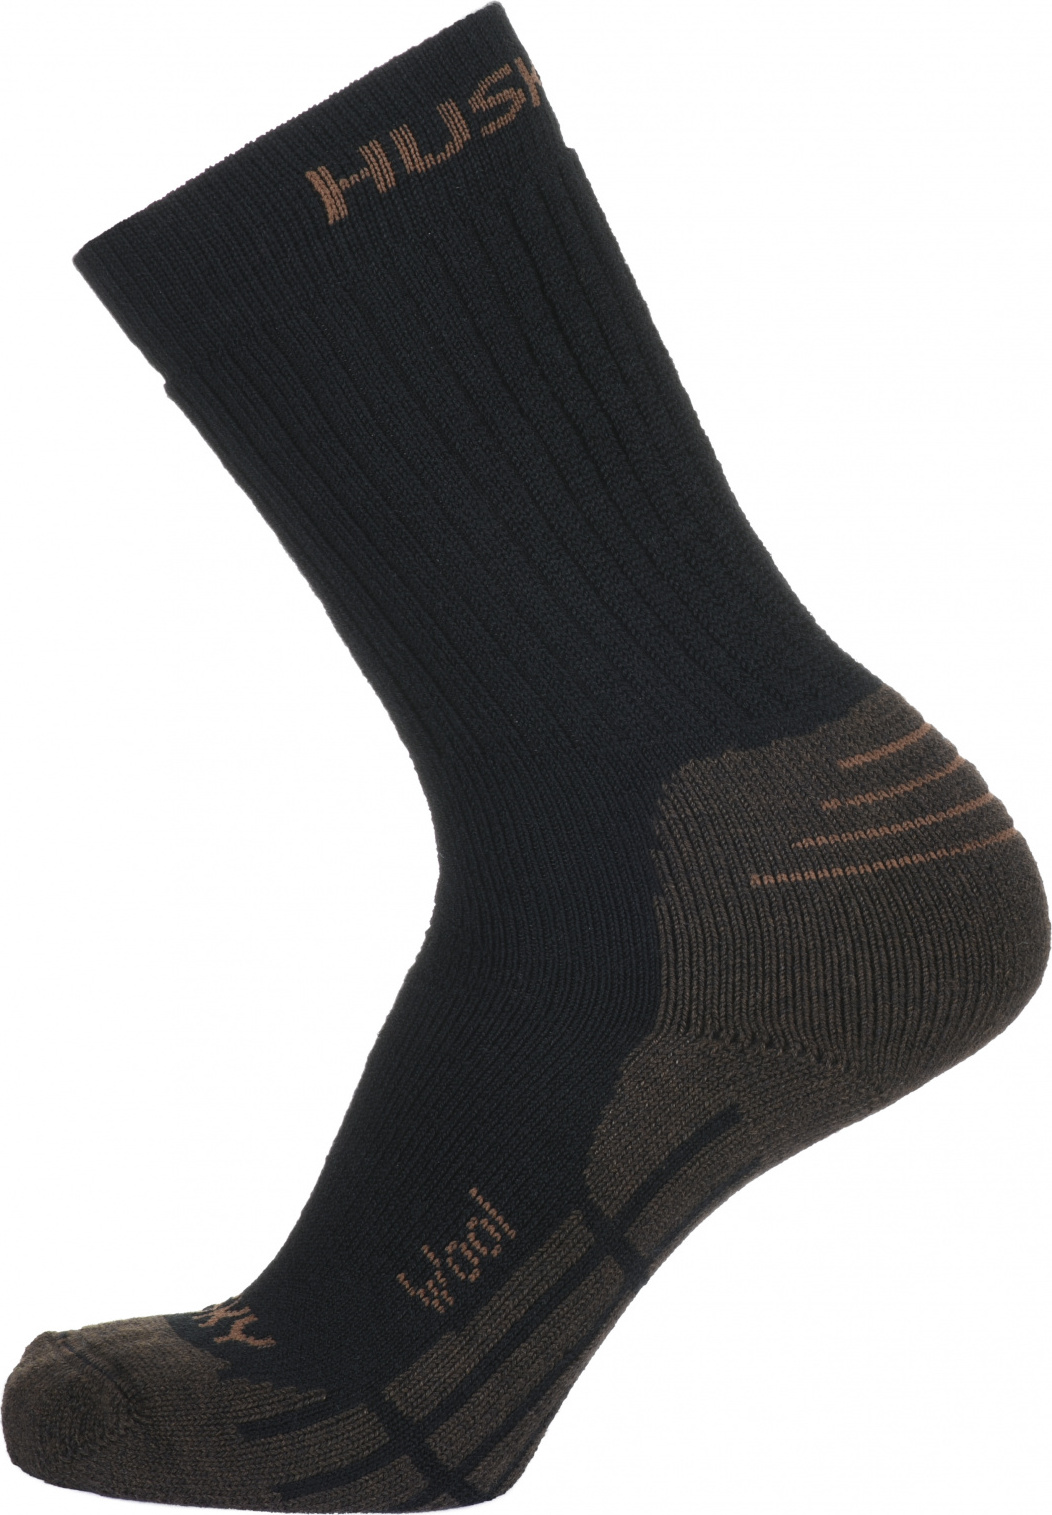 Ponožky HUSKY All Wool hnědá Velikost: XL (45-48)